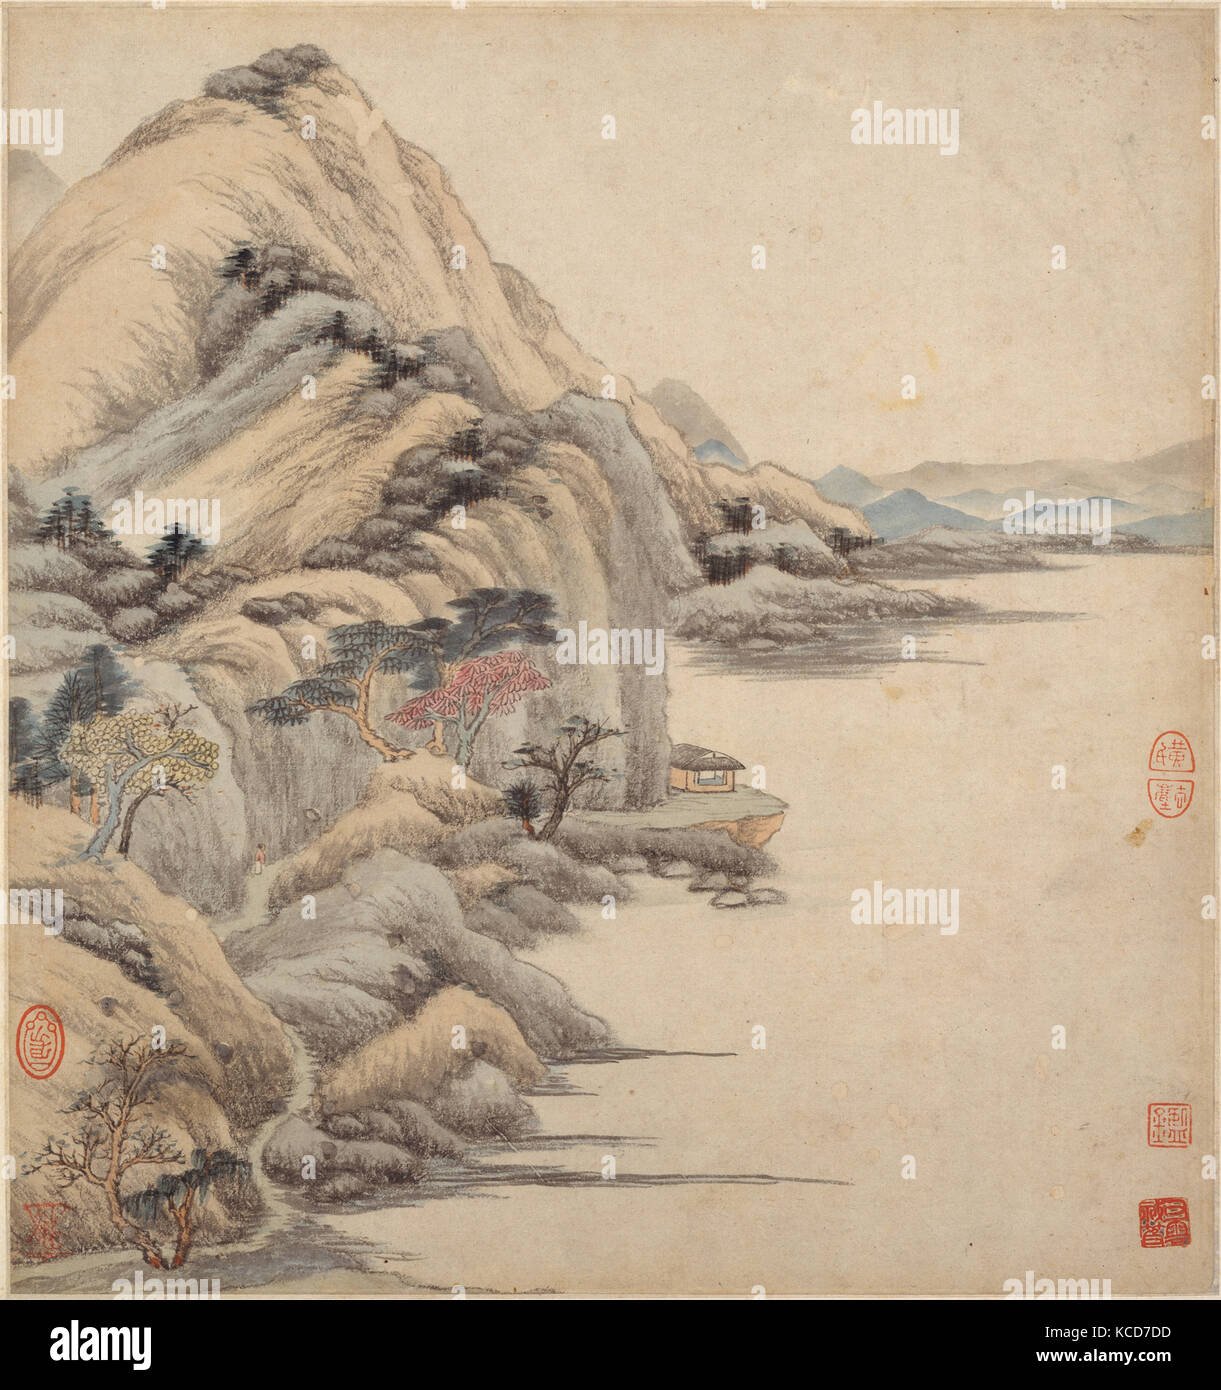 清 王鑑 仿古山水圖 冊 紙本, Landscapes in the styles of ancient masters, Wang Jian, 17th century Stock Photo